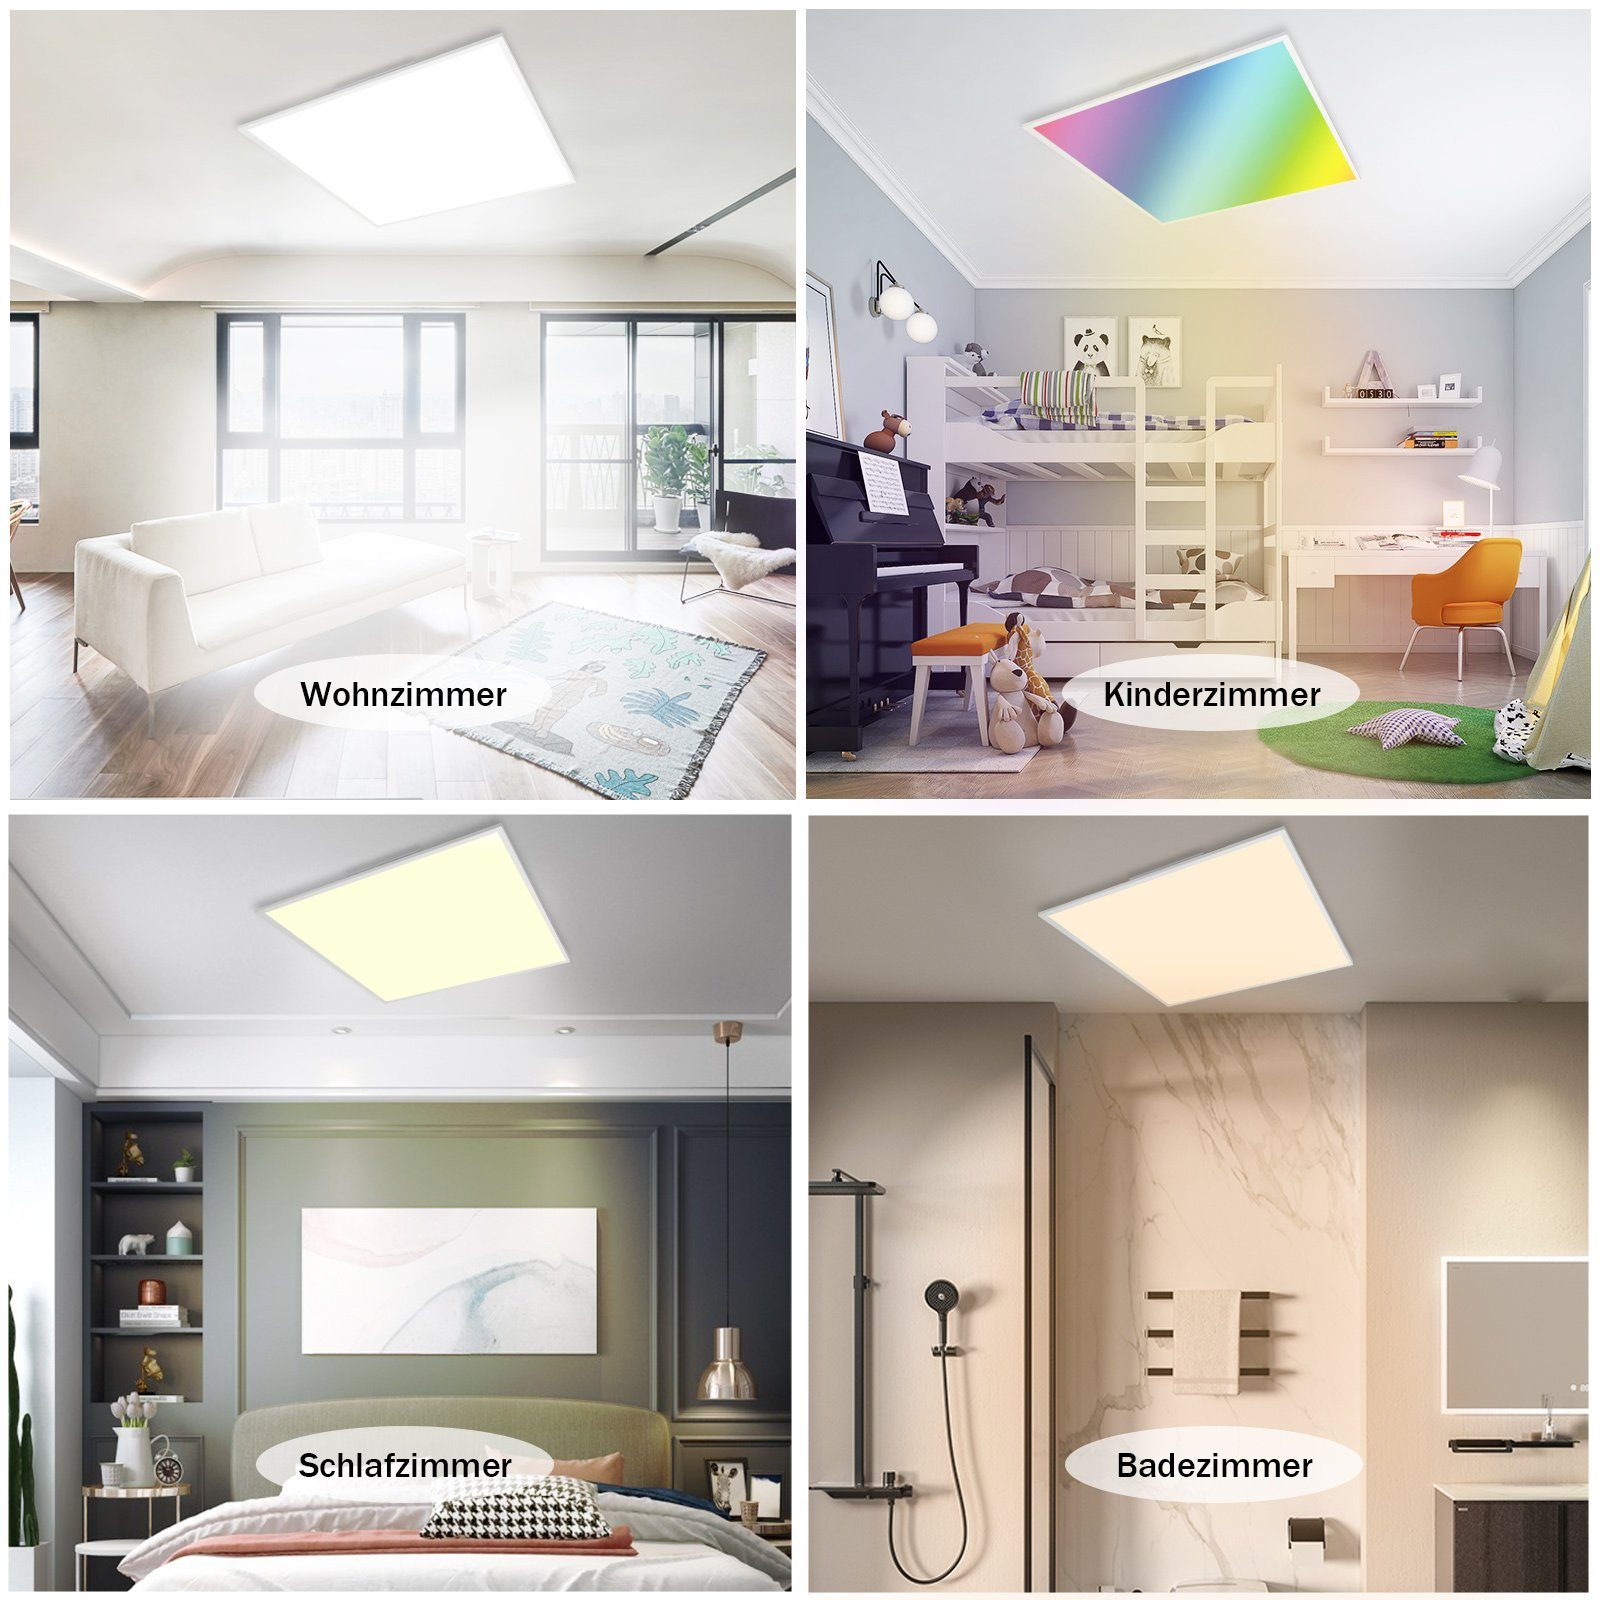 Ø45CM Deckenleuchte LED RGB mit Farbwechsel ZMH fest LED Weiß, 24W Fernbedienung Eckig Hintergrundbeleuchtung Deckenlmape Dimmbar integriert, -